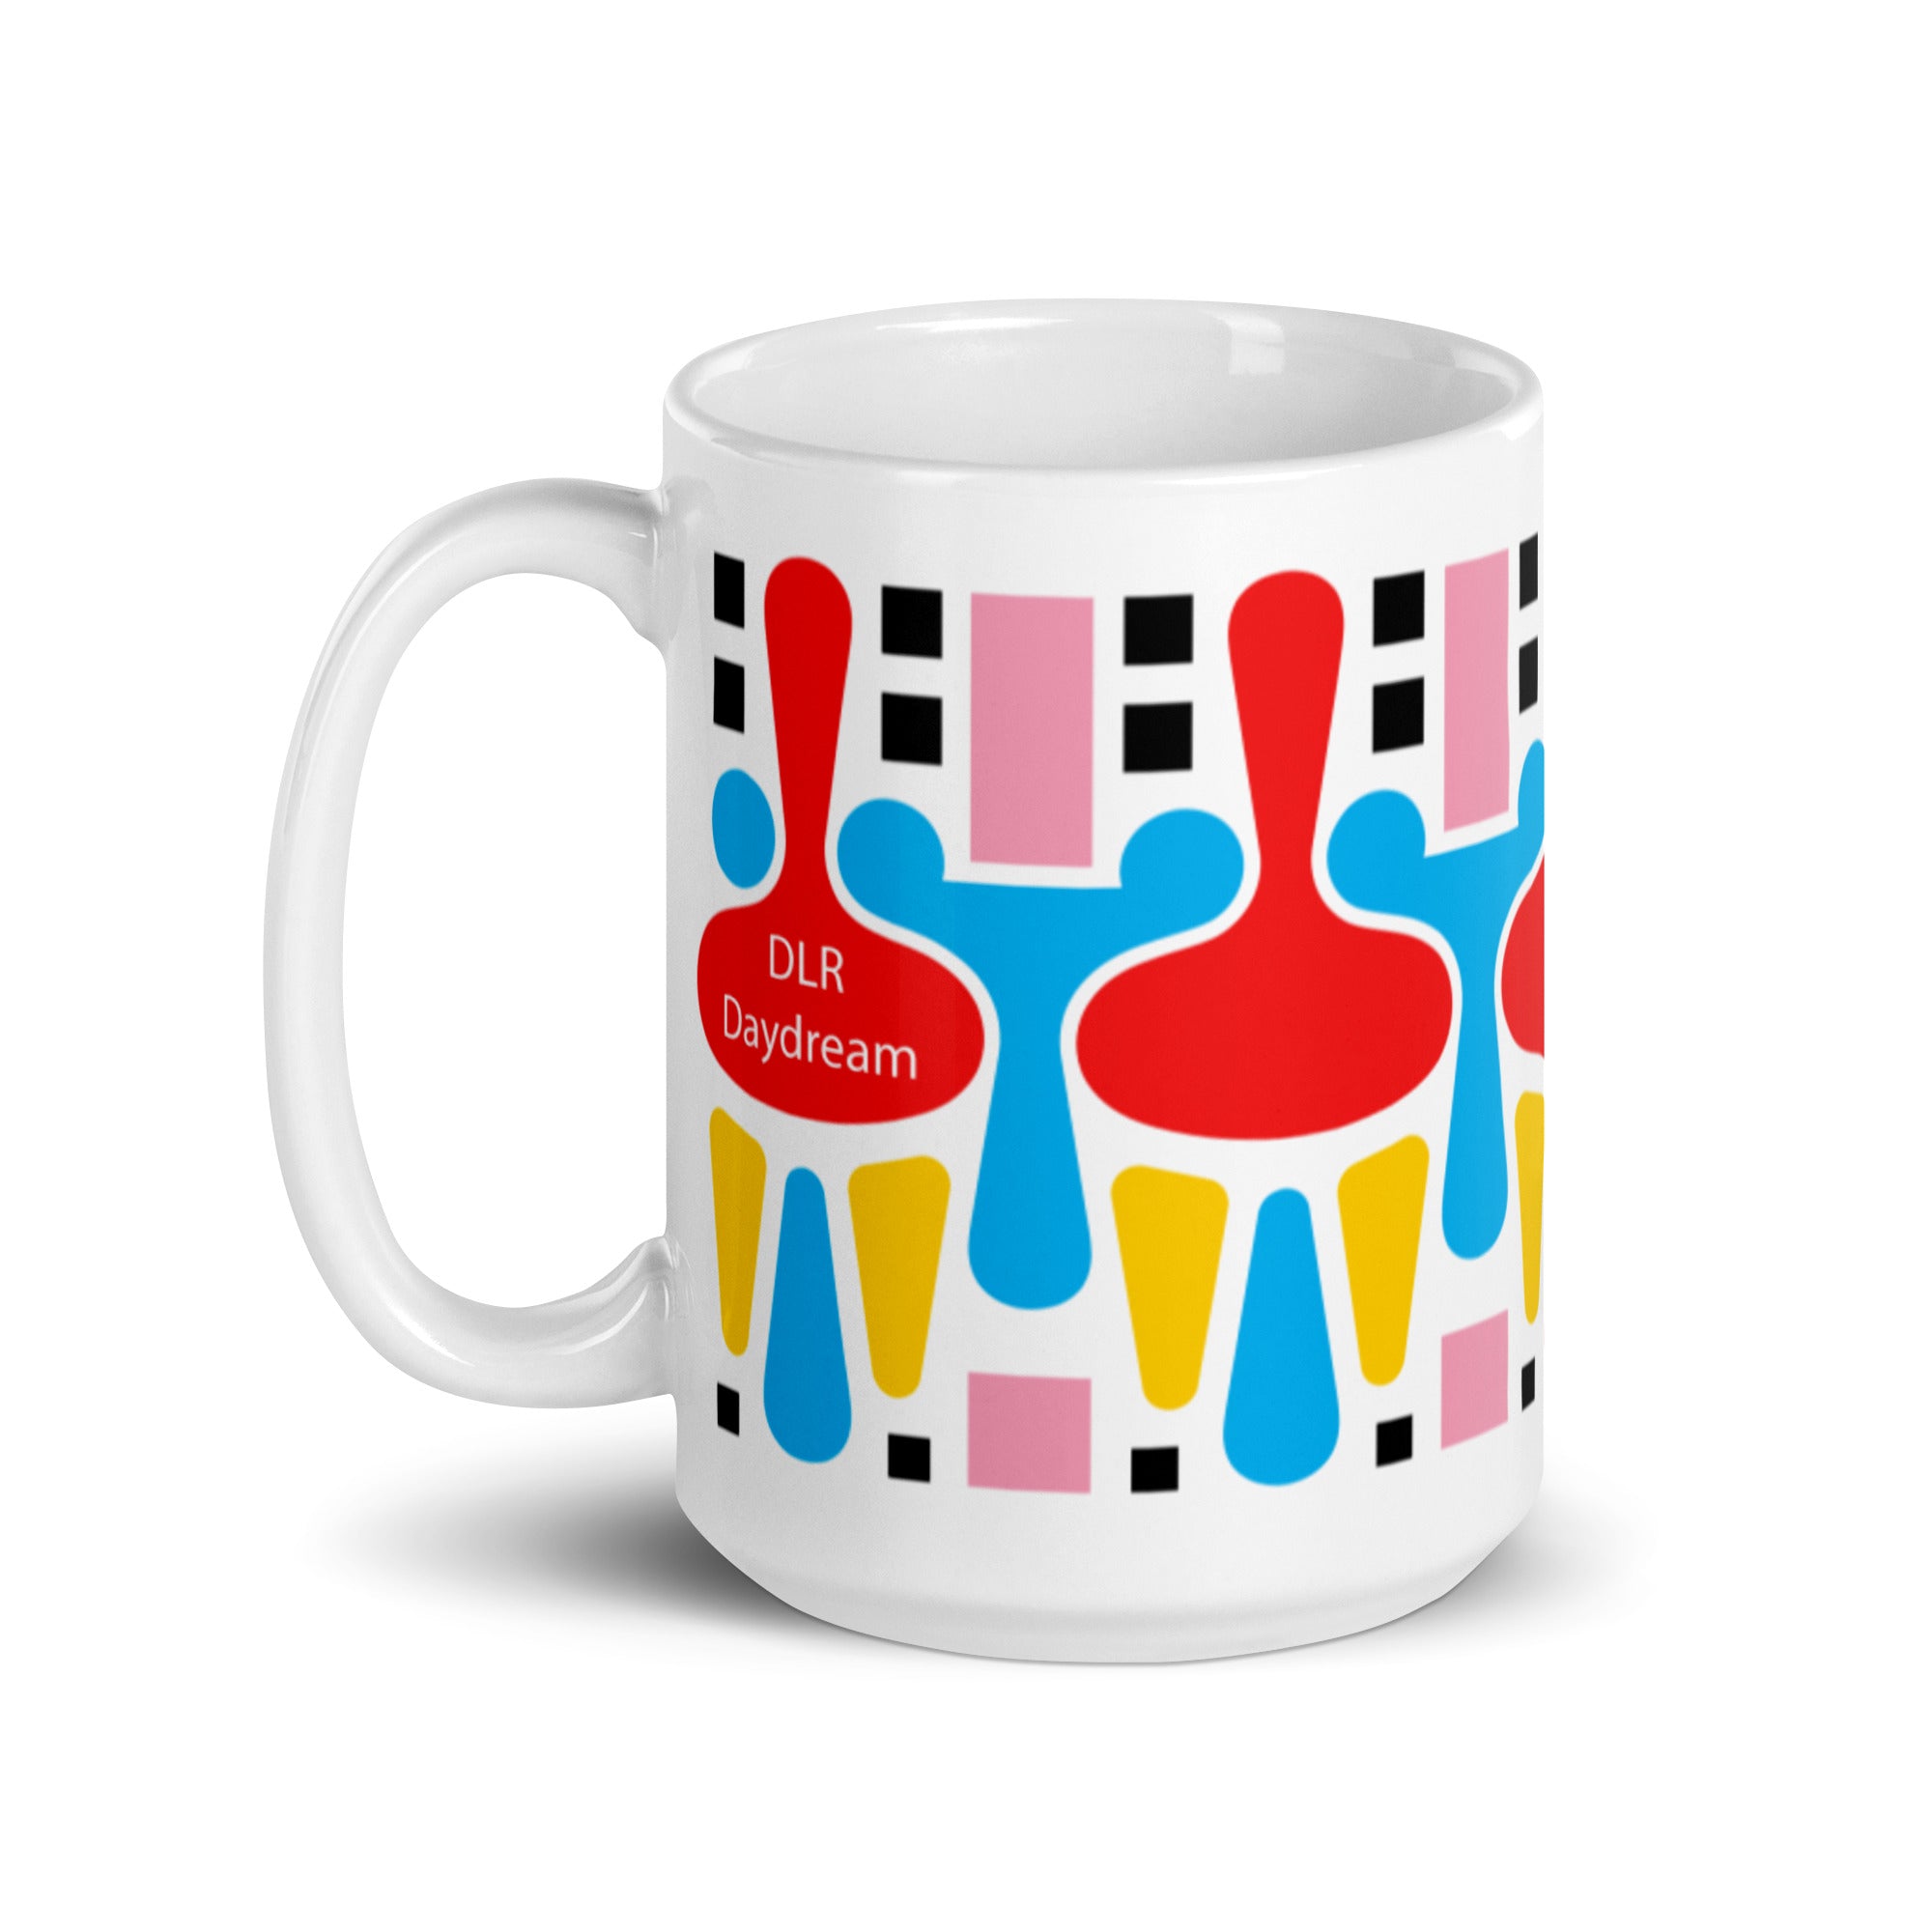 "DLR Daydream" Mug